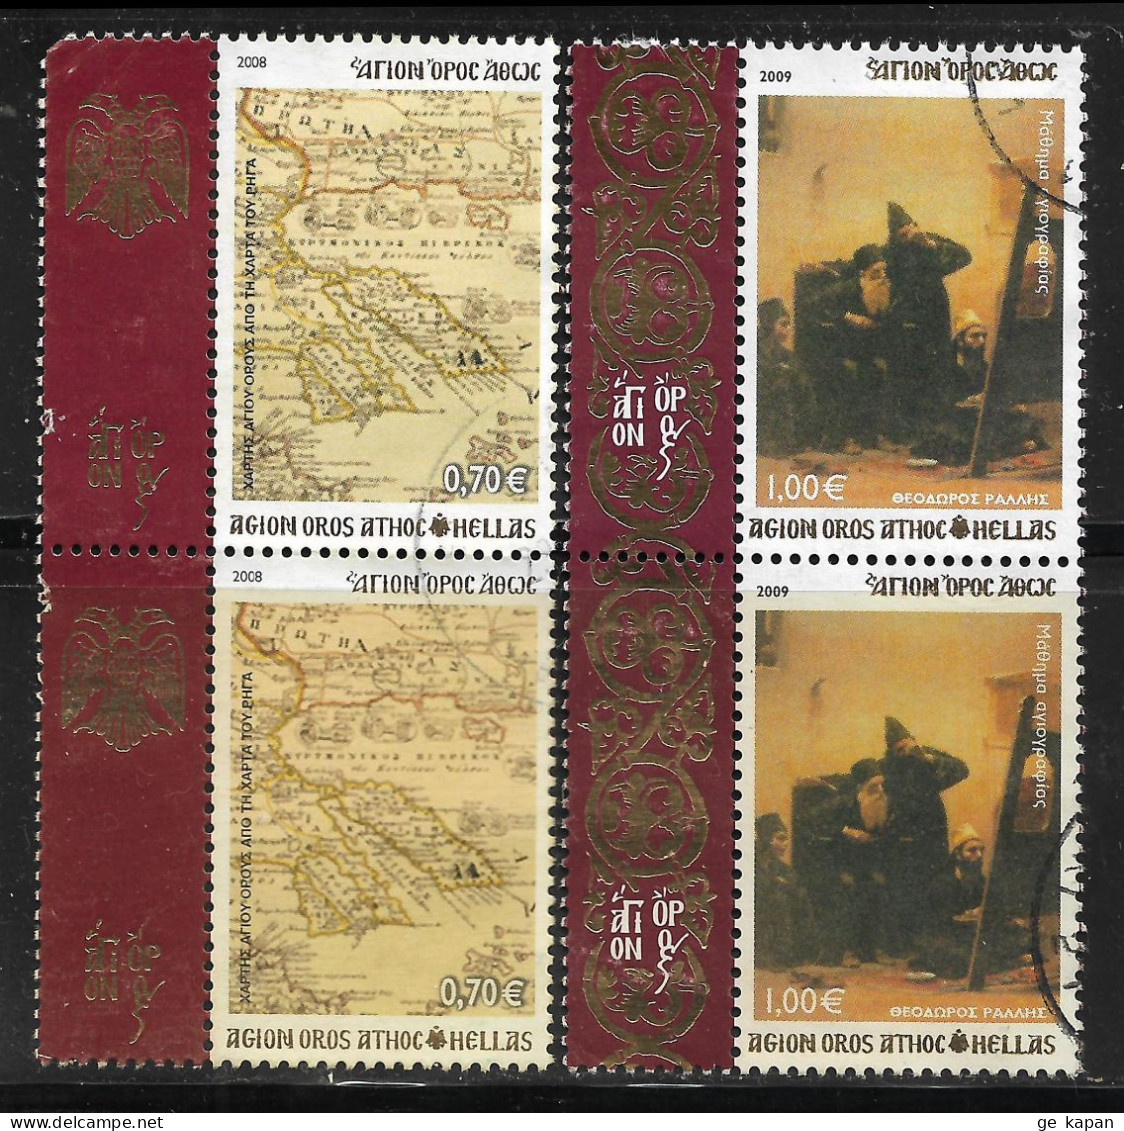 2008,2009 GREECE Mount Athos Set Of 2 Used Pair Stamps (Scott # 3,39) CV $10.50 - Oblitérés